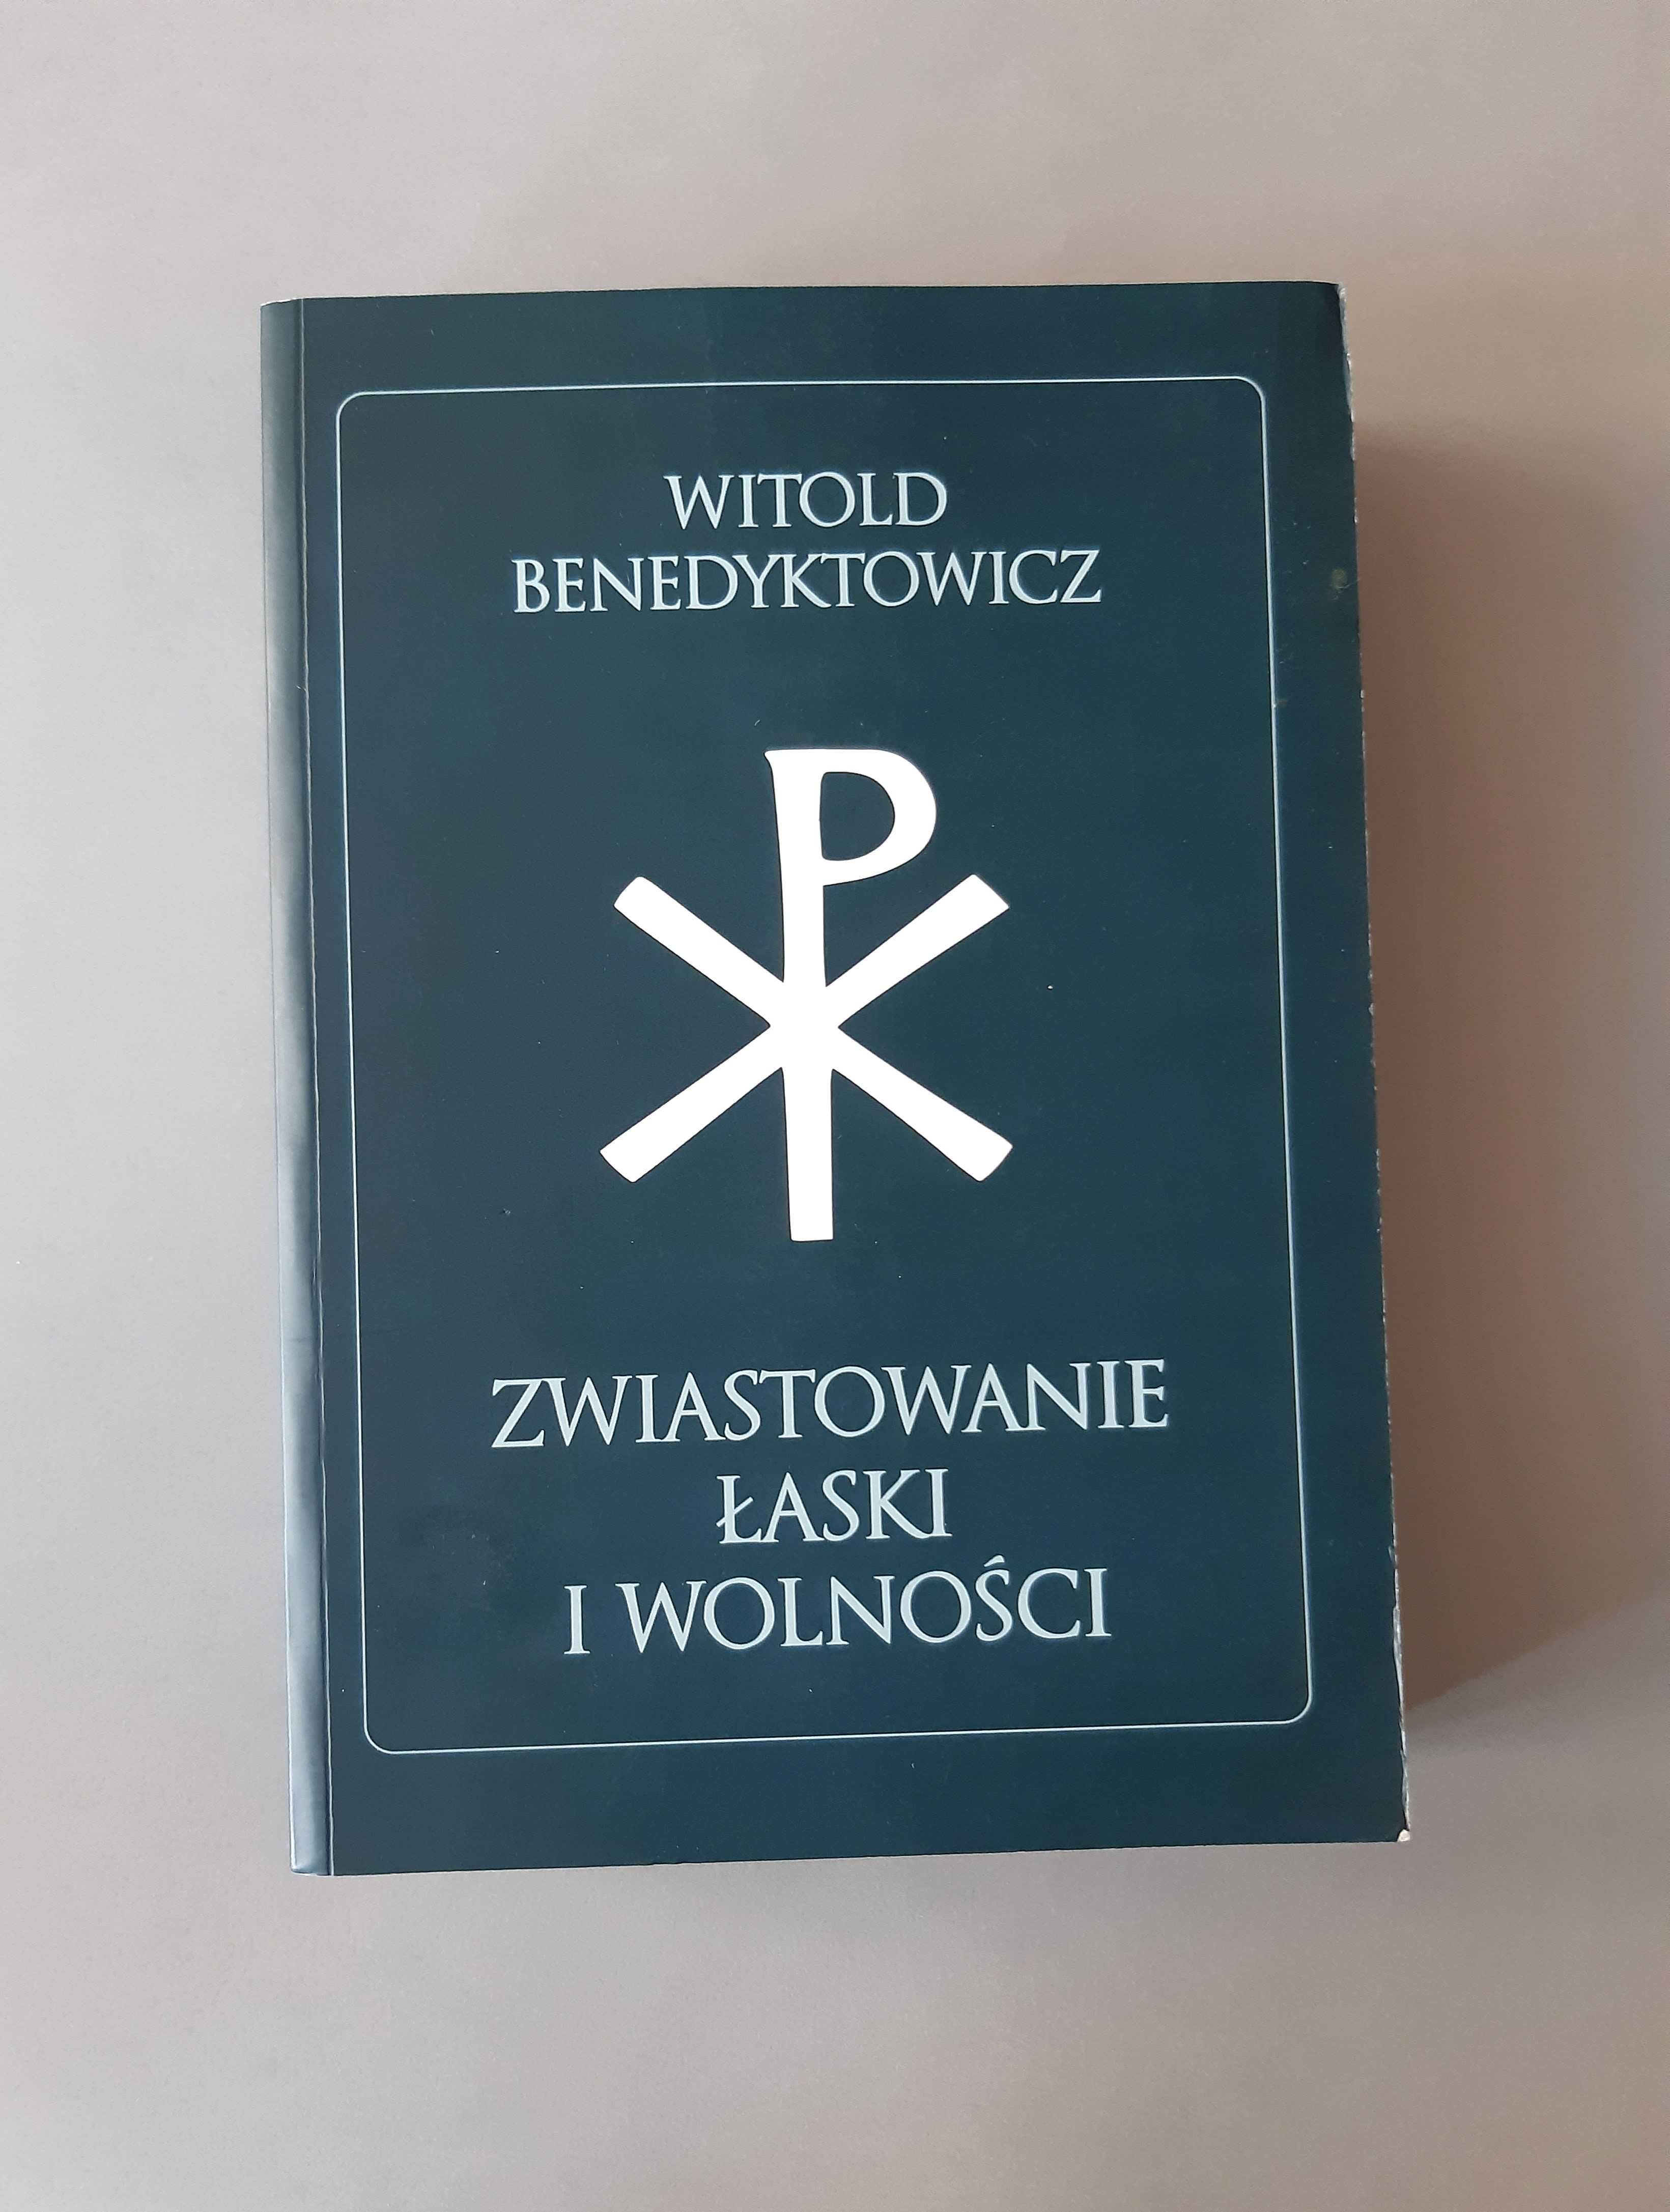 Zwiastowanie łaski i wolności Witold Benedyktowicz